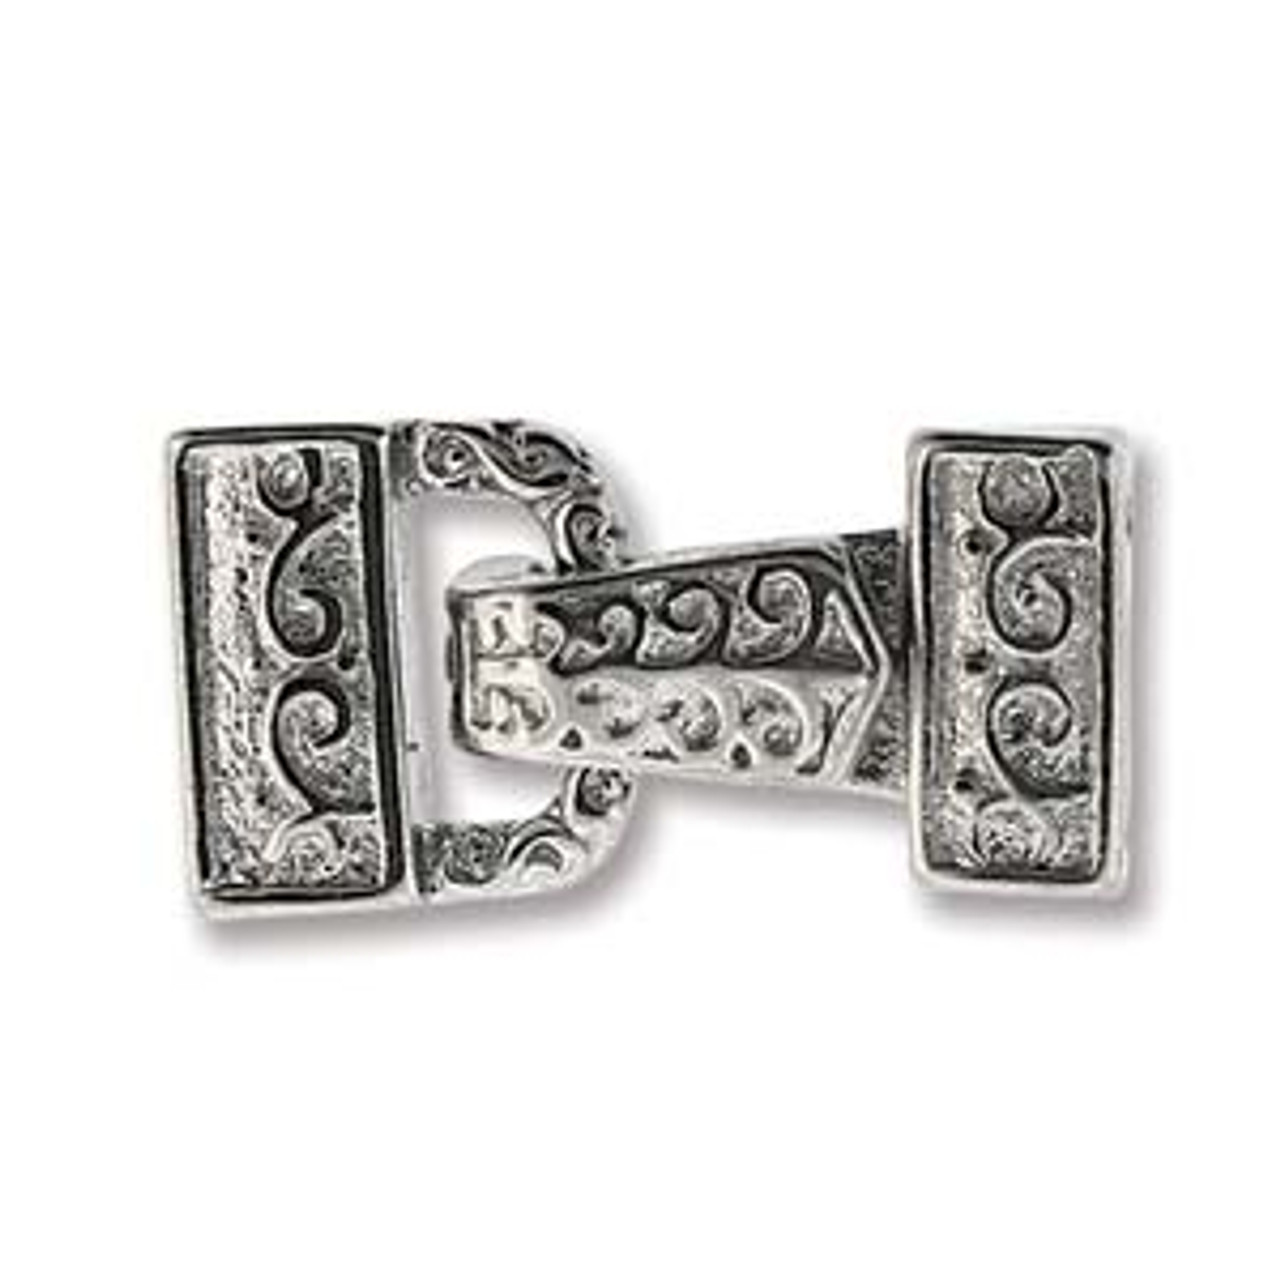 2 Hole Bracelet Anchor Clasp-Bronze/Silver